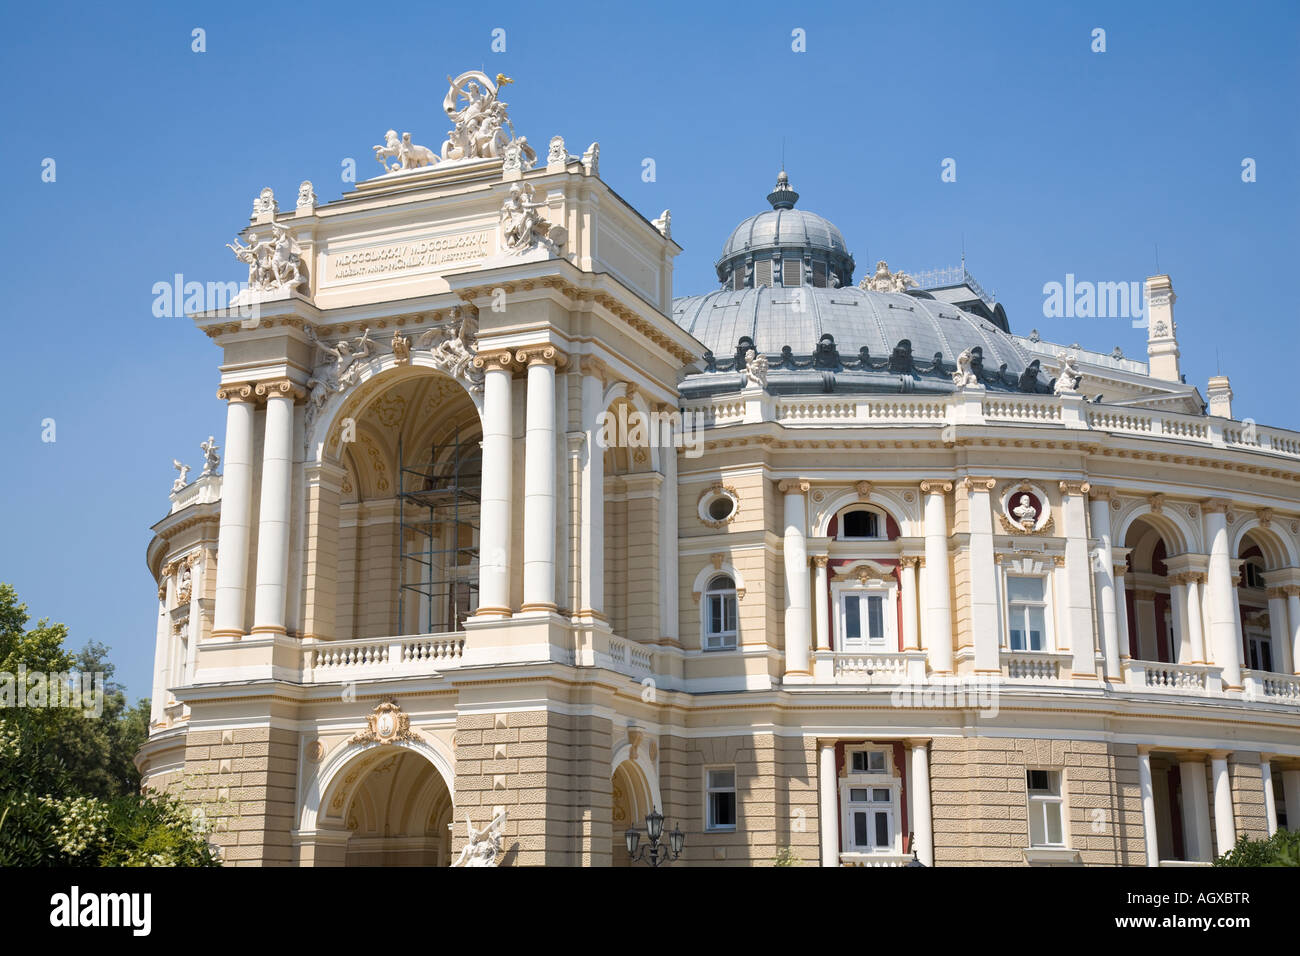 La facciata della opera house di Odessa / Ucraina Foto Stock